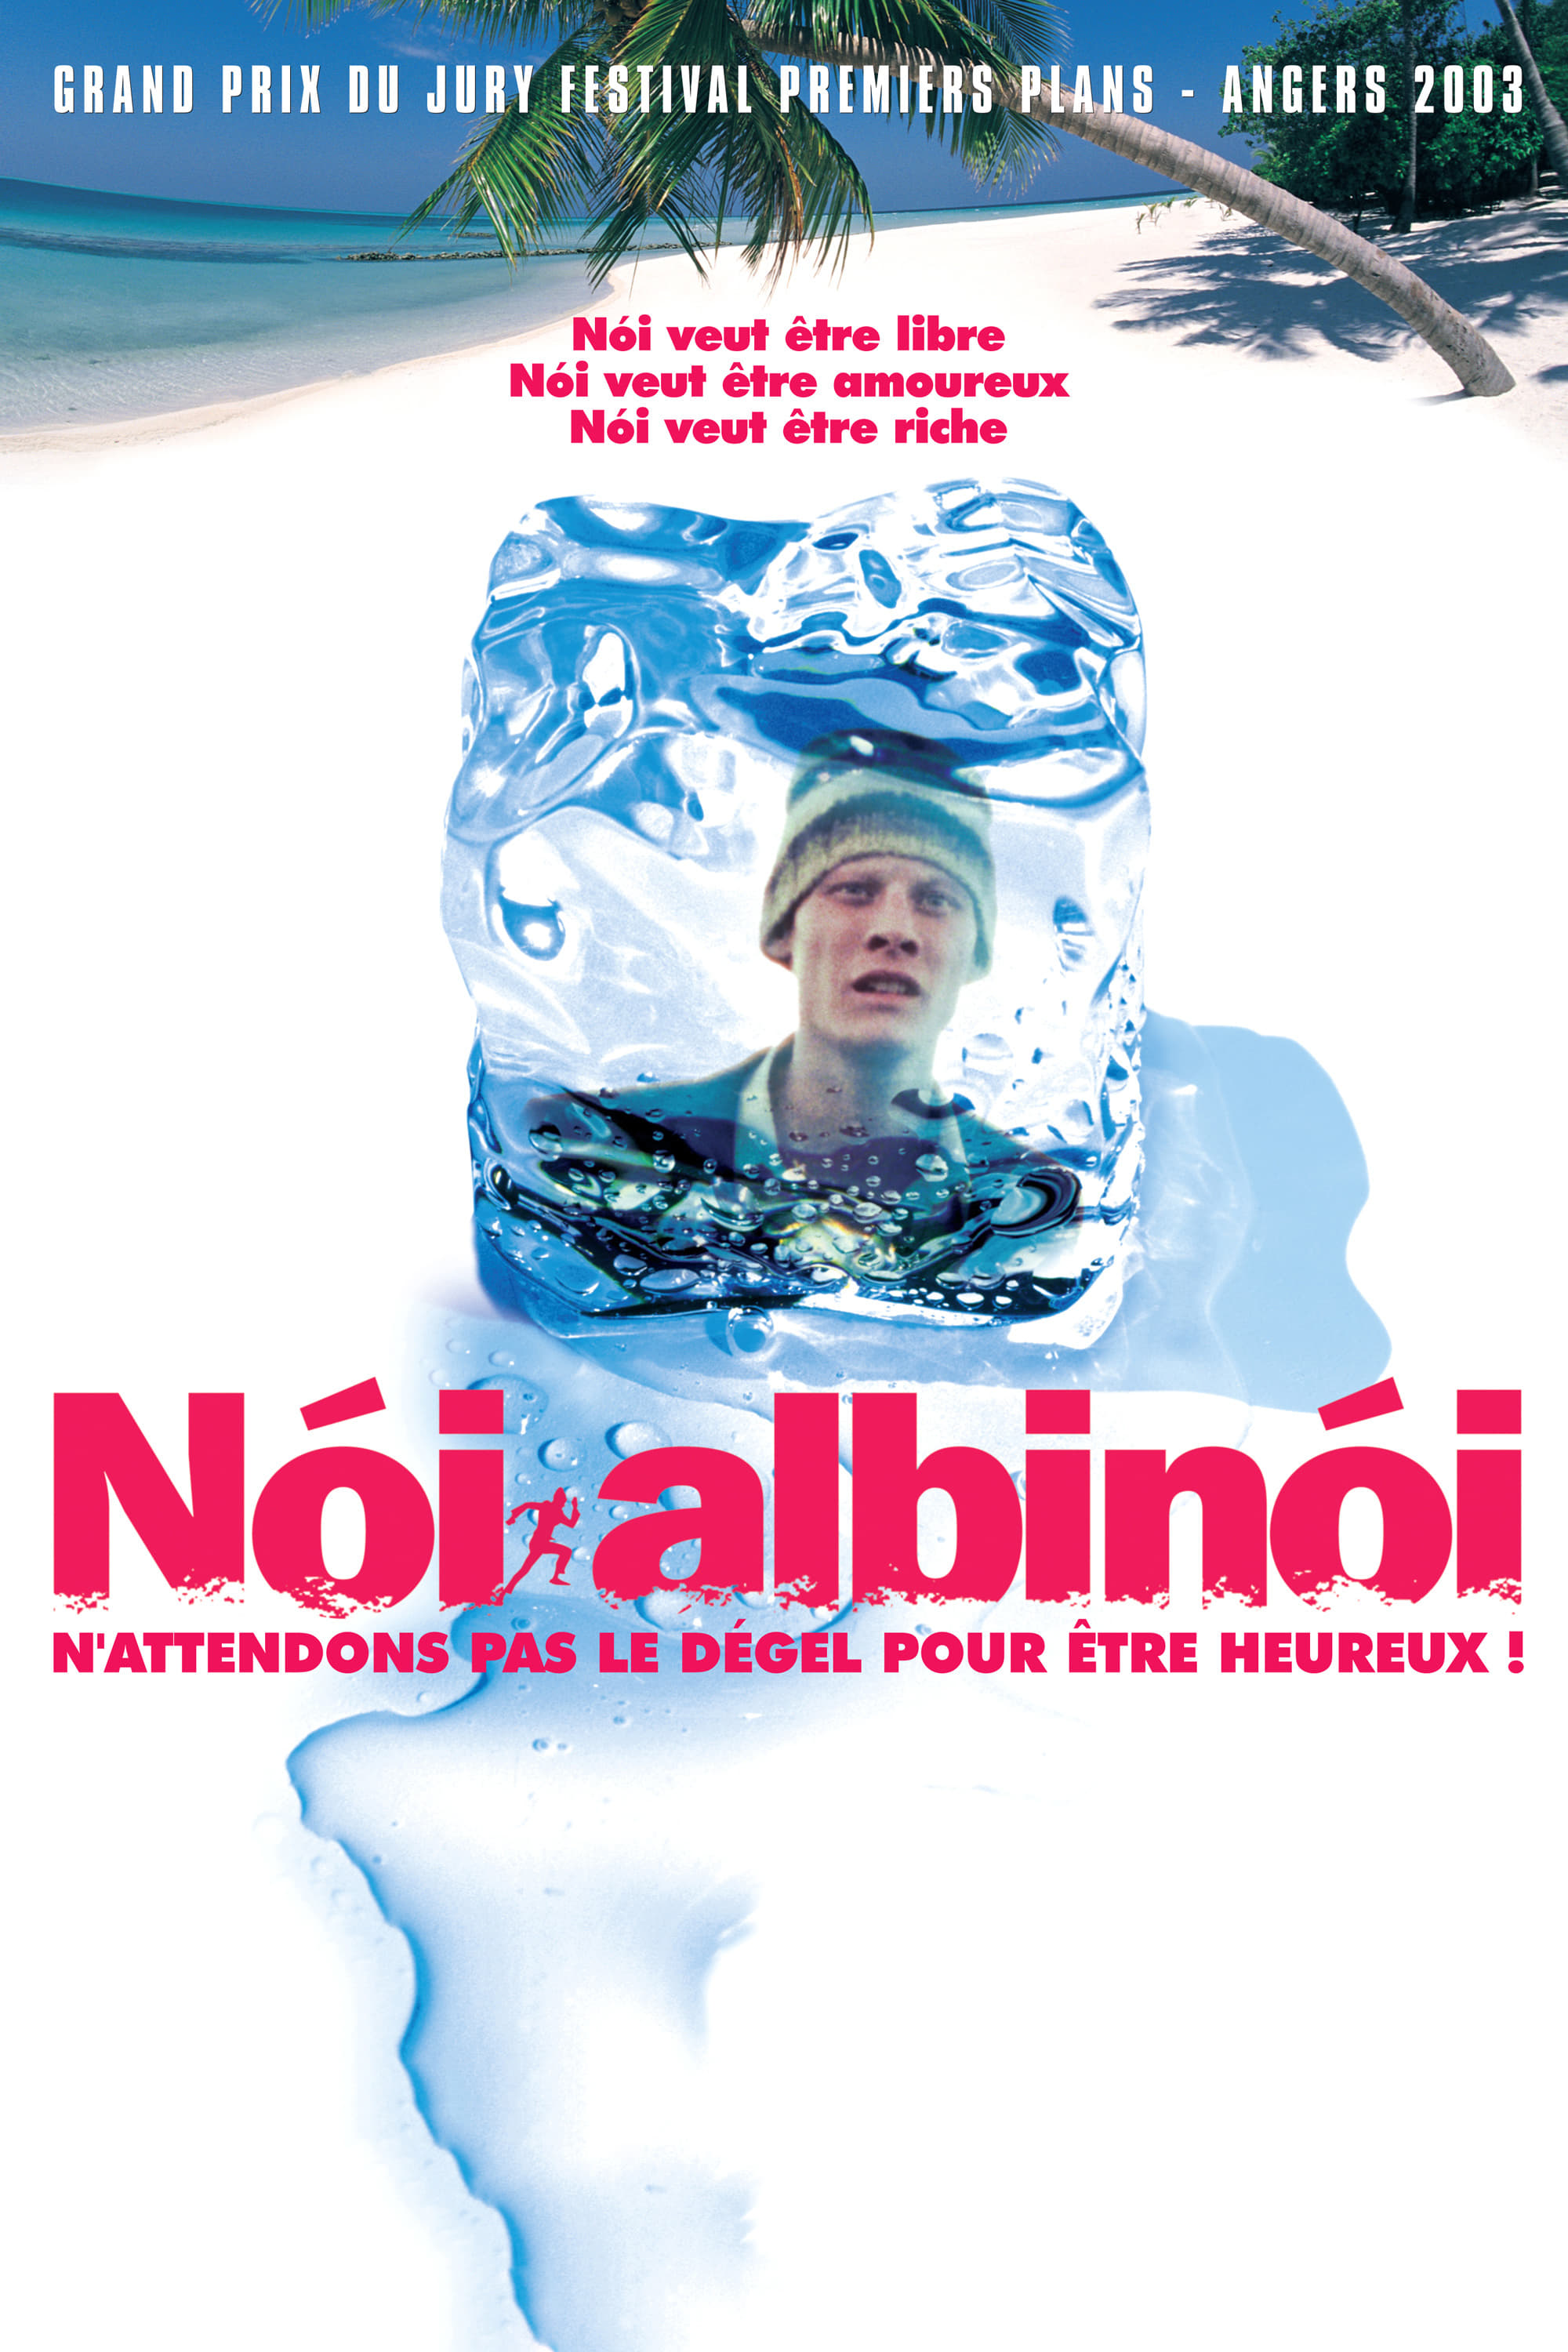 Noi the Albino